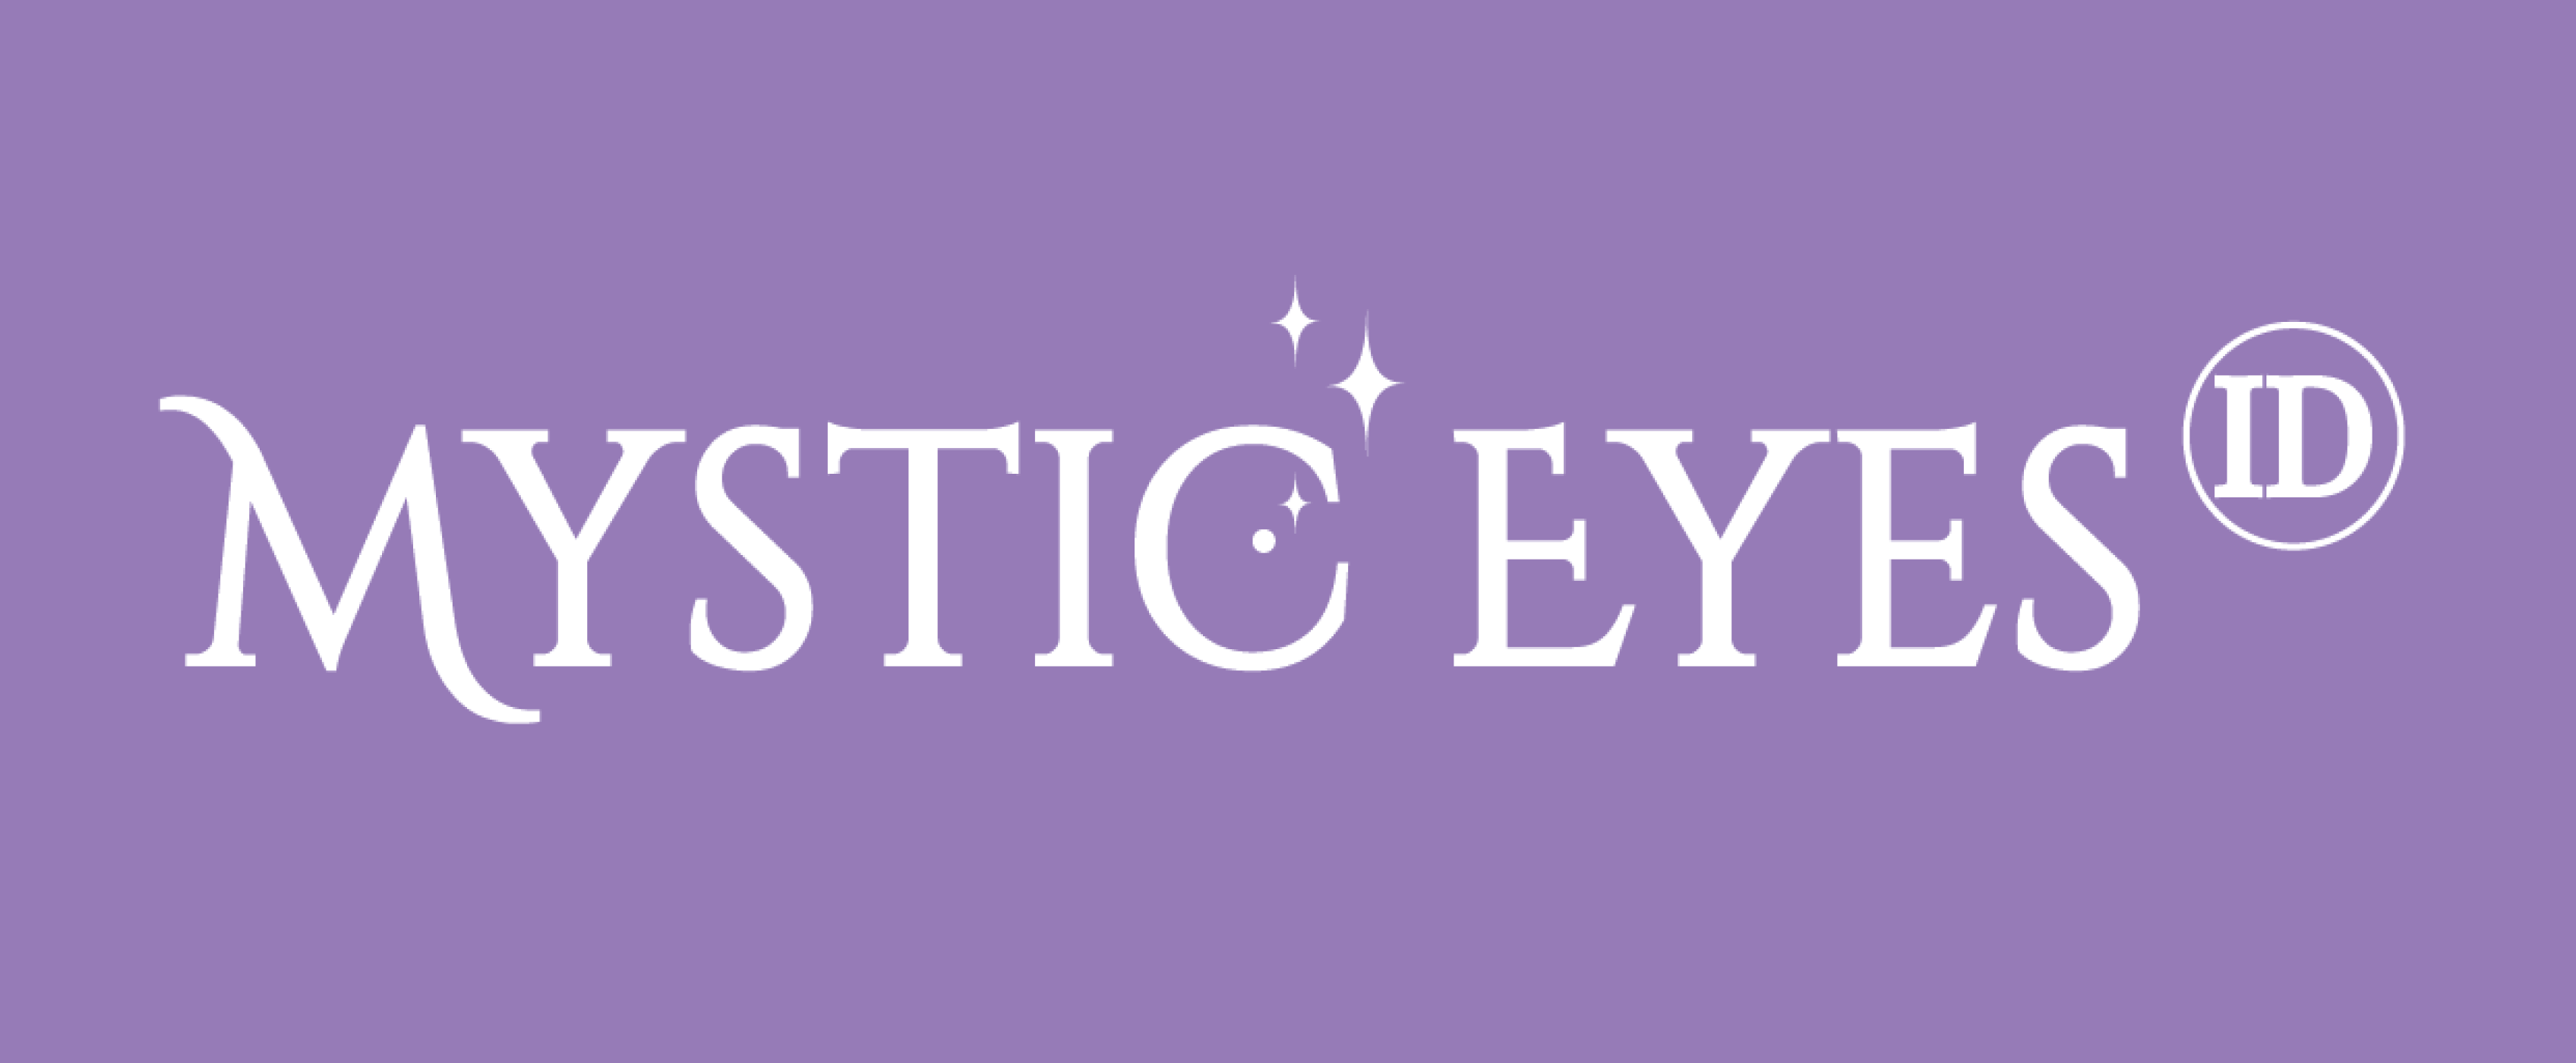 Mystic Eyes